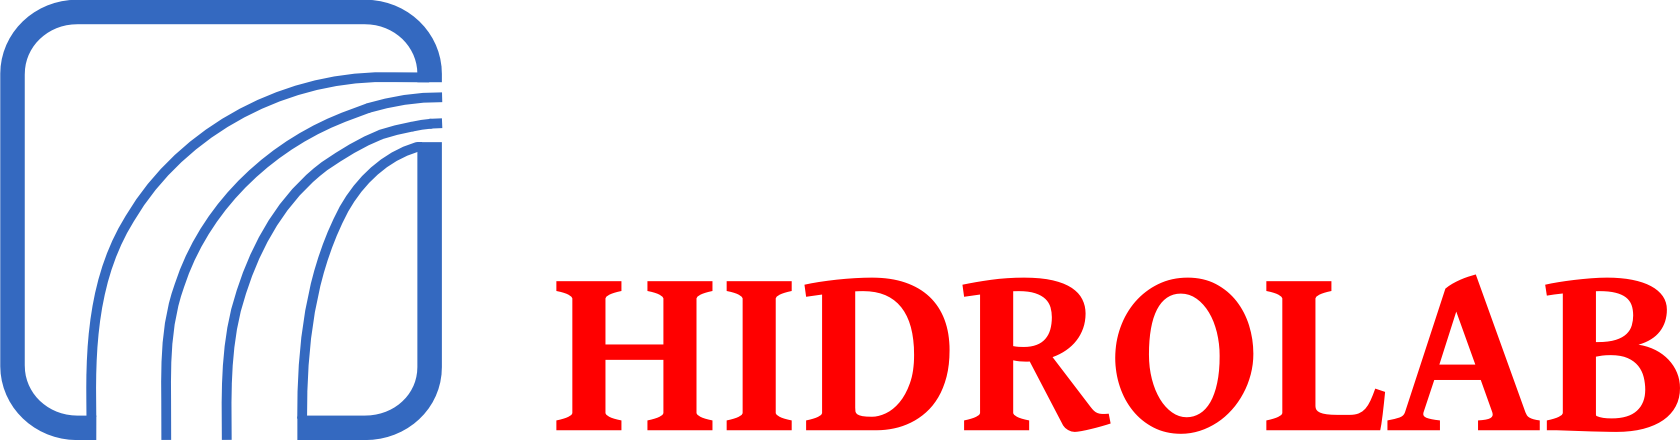 Logo Hidrolab análisis de aguas